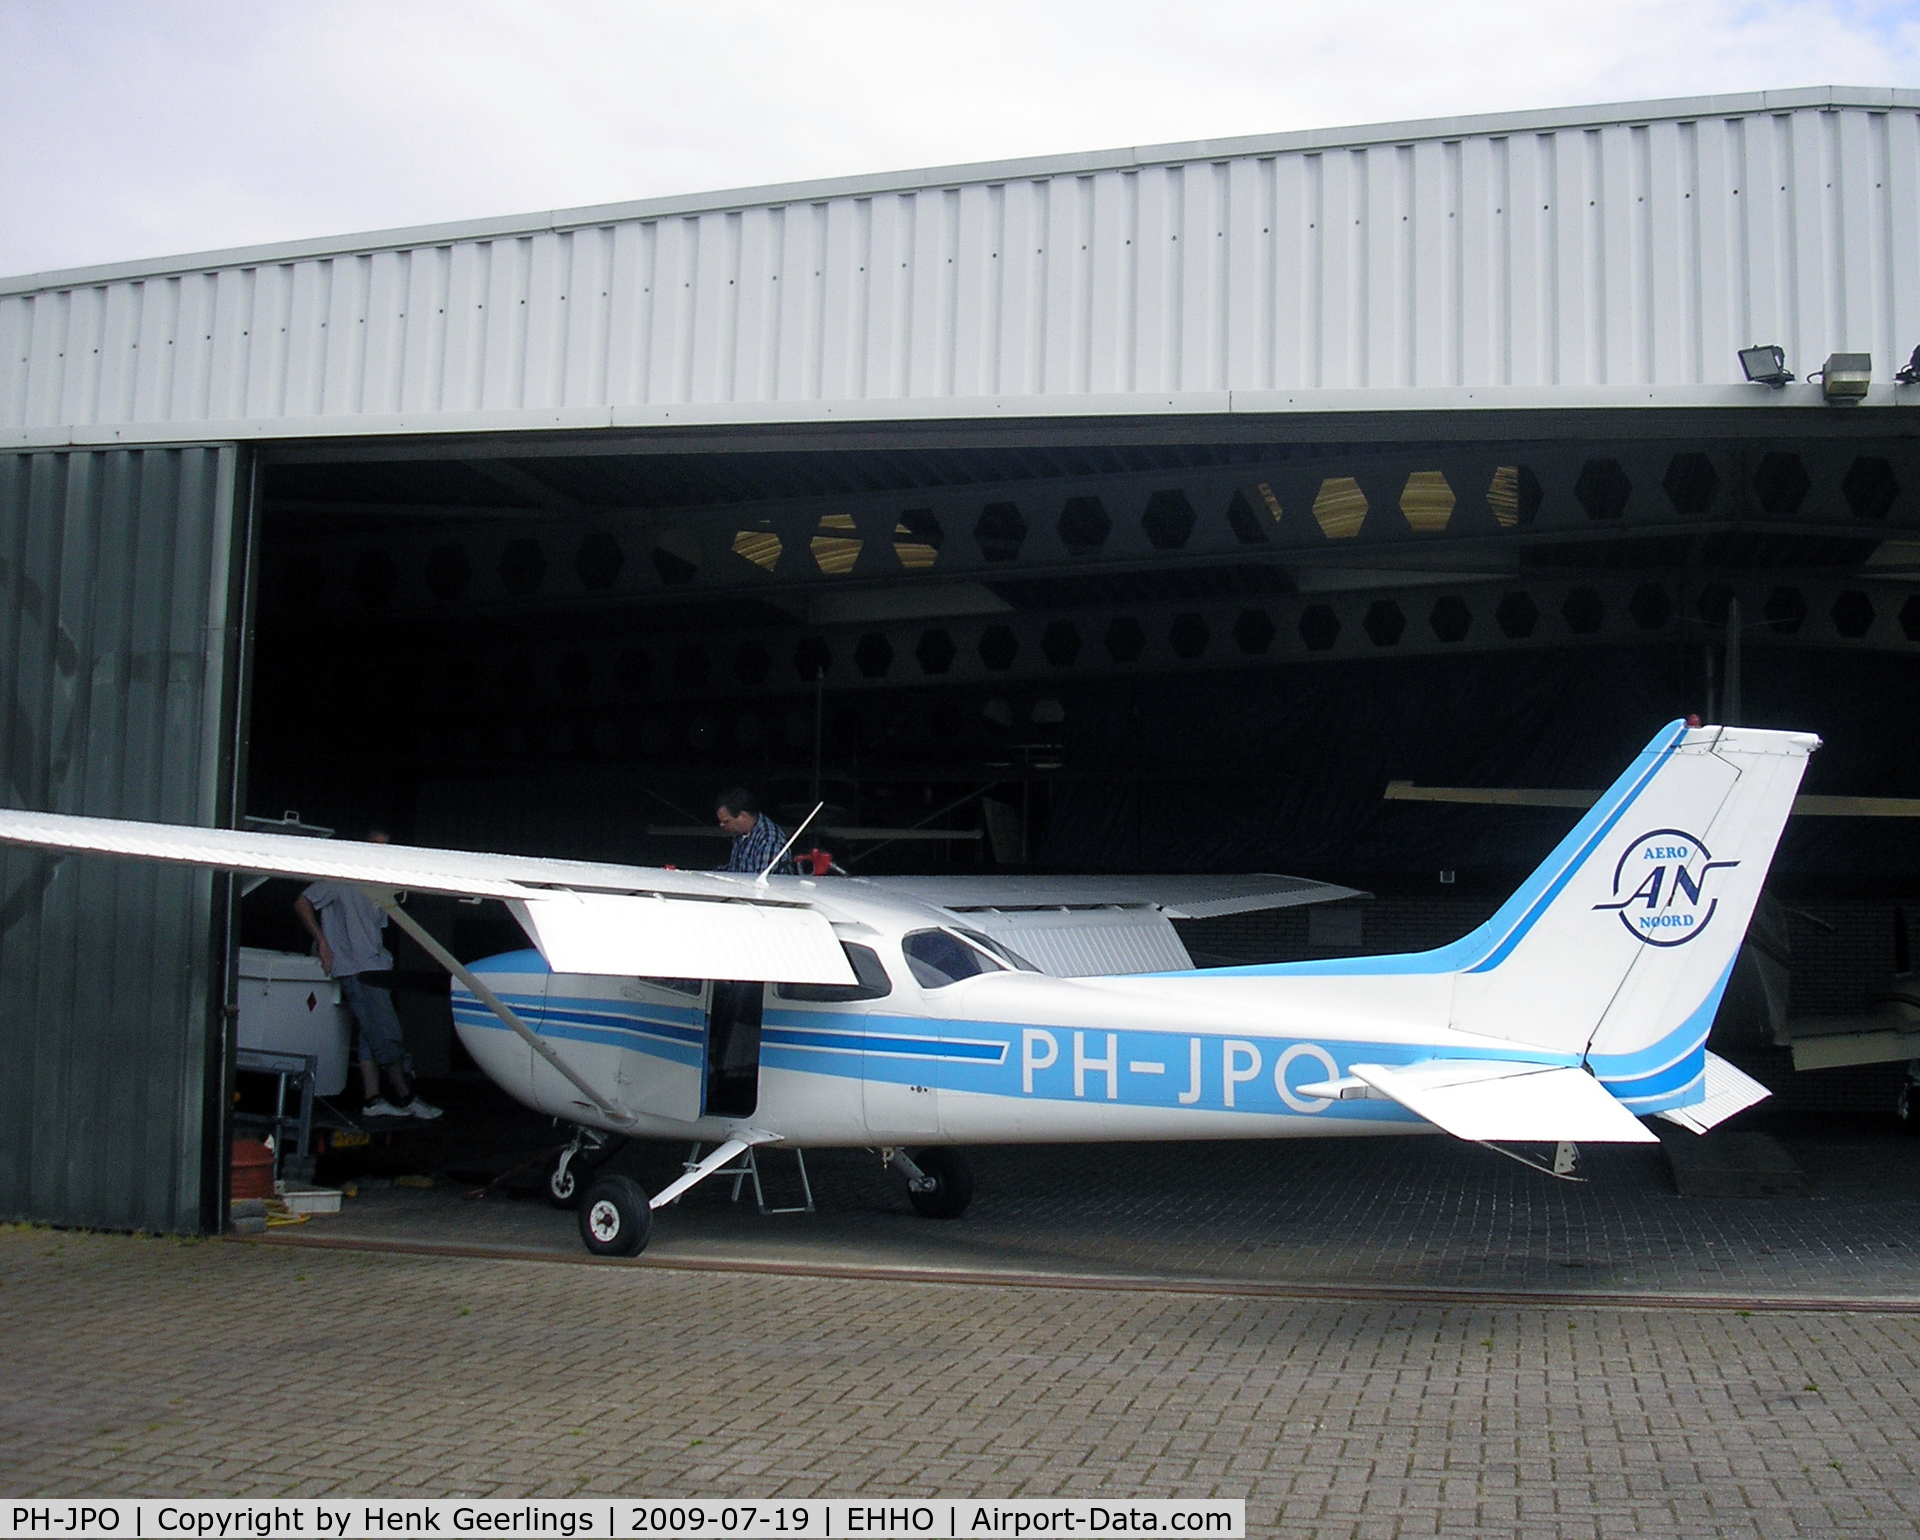 PH-JPO, 1980 Reims F172N Skyhawk C/N F17202010, Aero Noord , Hoogeveen Aerodrome - The Netherlands